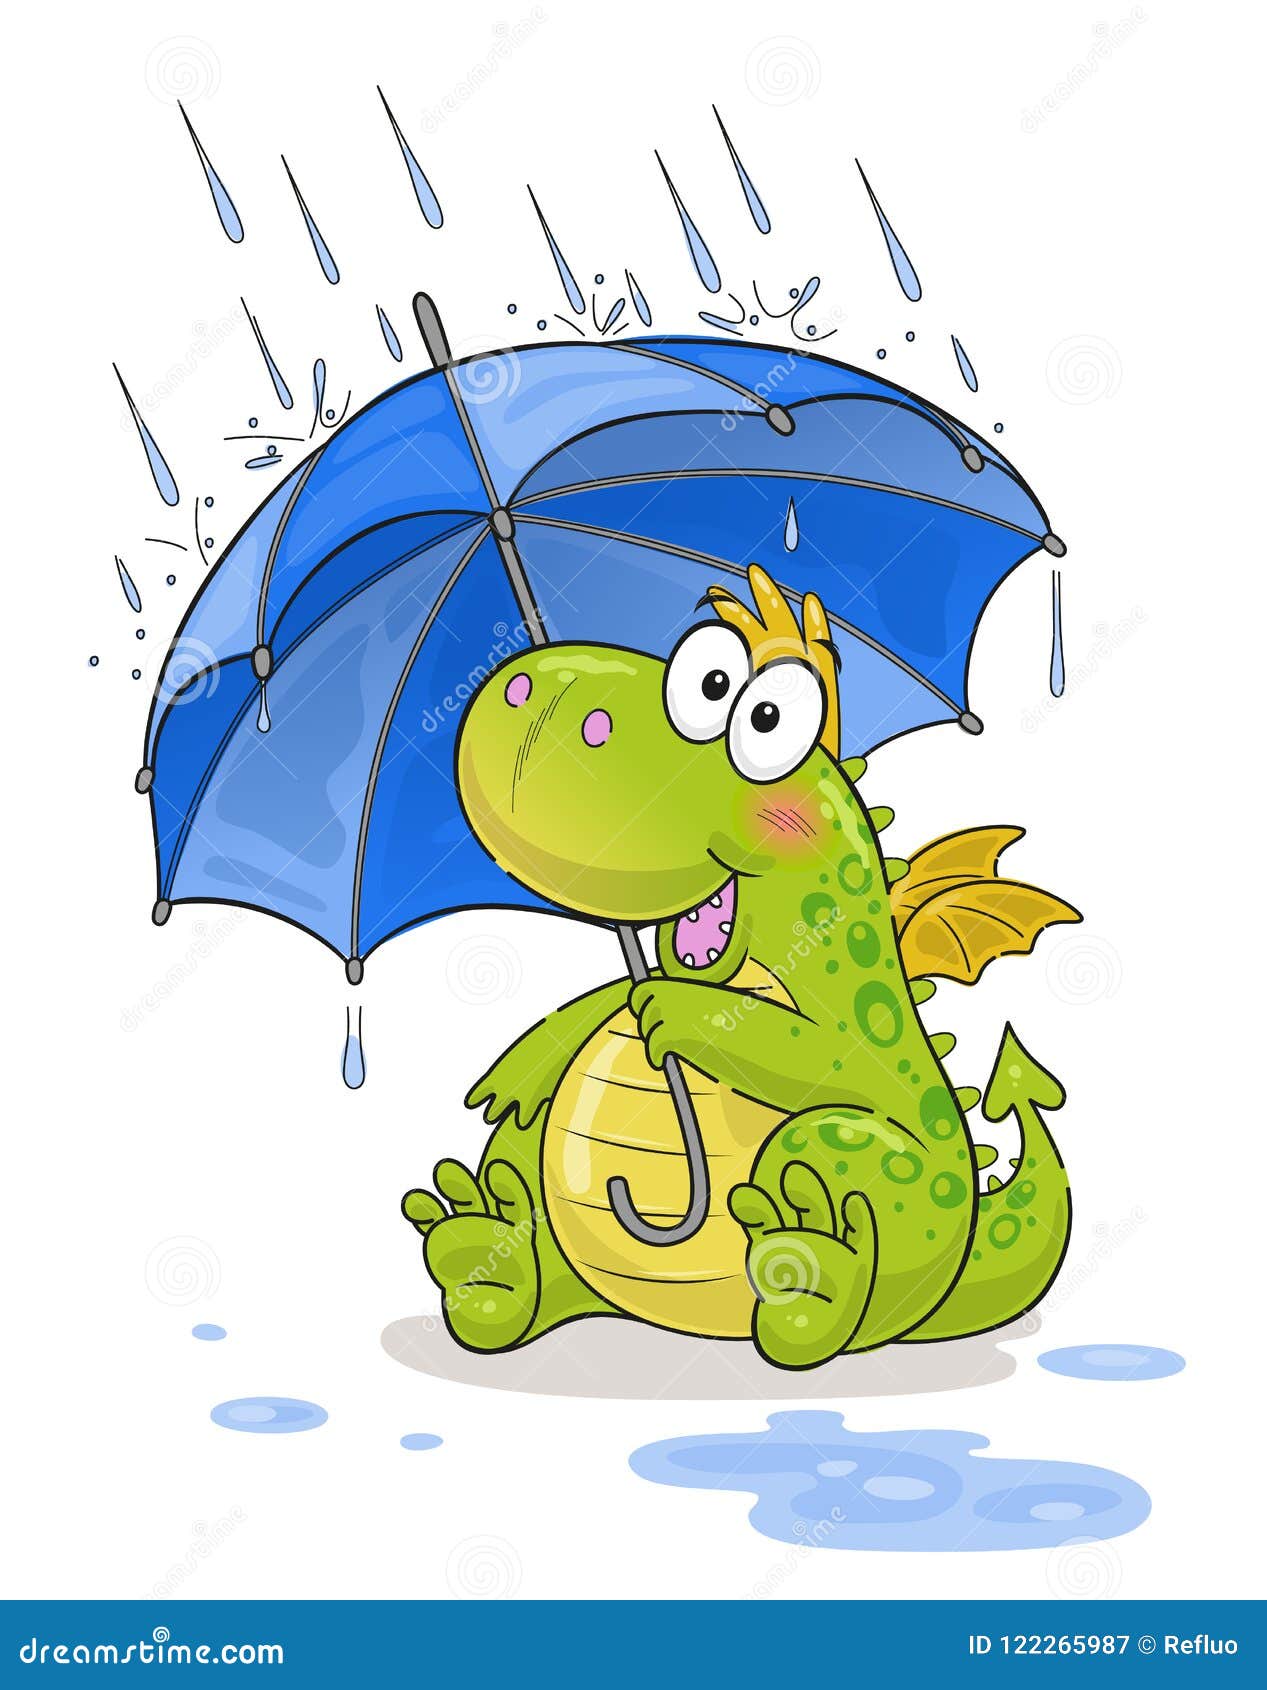 Funny Rain Cartoon